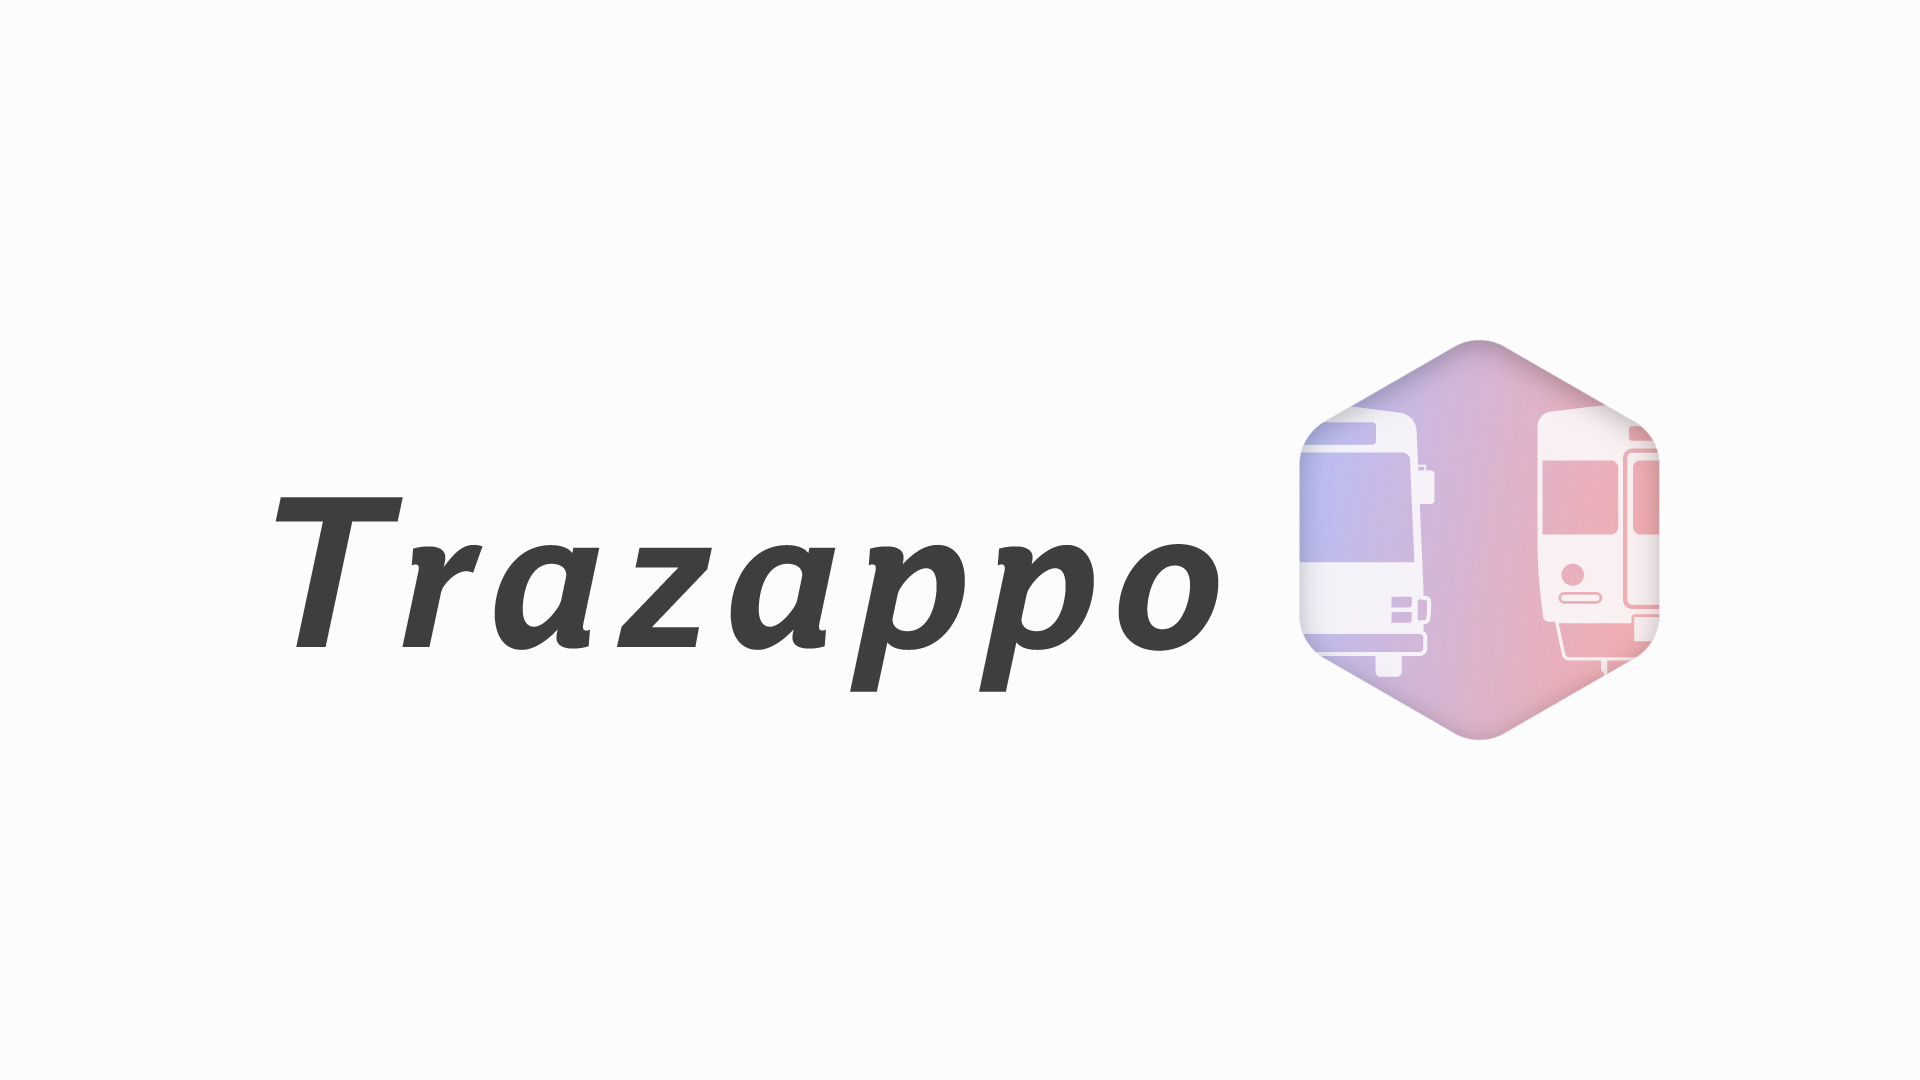 Trazappo